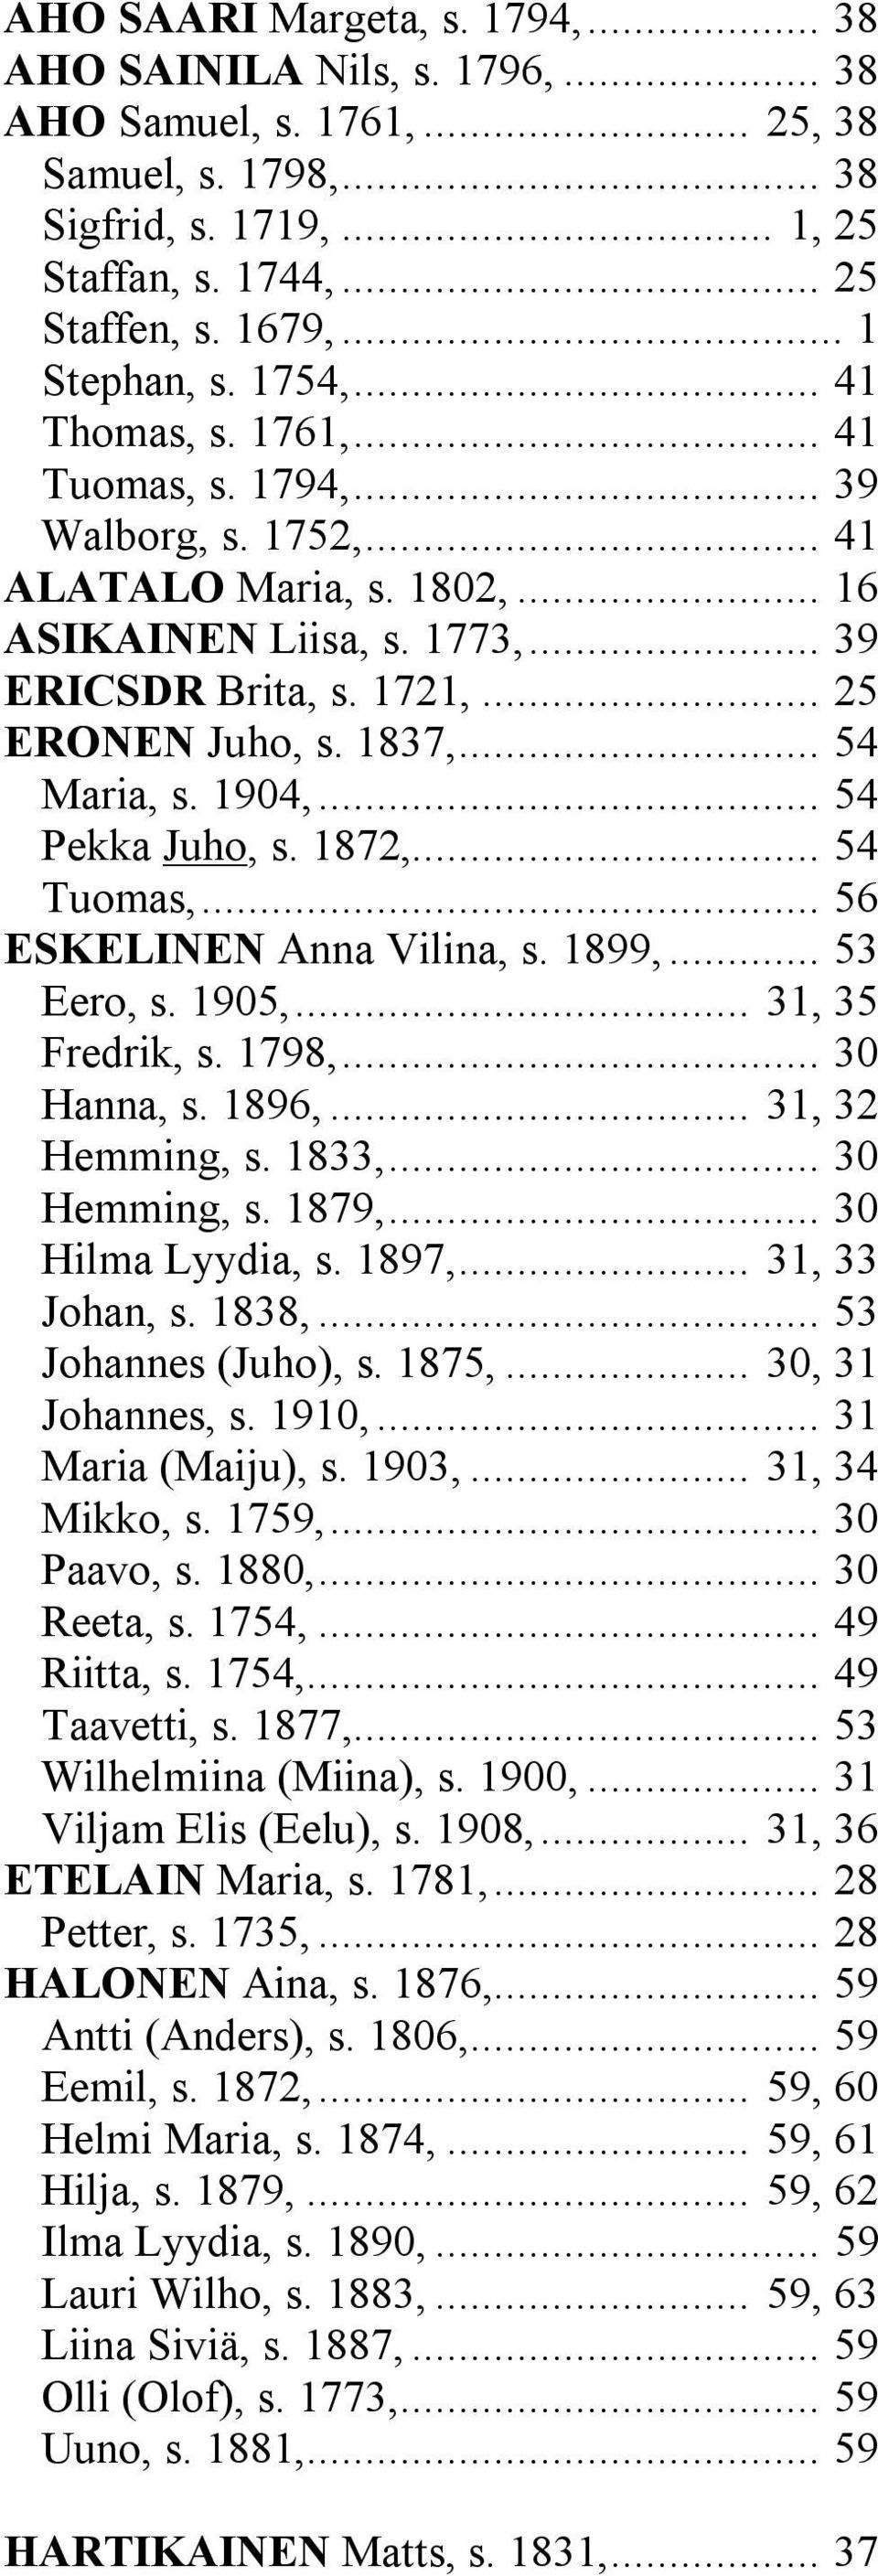 .. 25 ERONEN Juho, s. 1837,... 54 Maria, s. 1904,... 54 Pekka Juho, s. 1872,... 54 Tuomas,... 56 ESKELINEN Anna Vilina, s. 1899,... 53 Eero, s. 1905,... 31, 35 Fredrik, s. 1798,... 30 Hanna, s. 1896,.